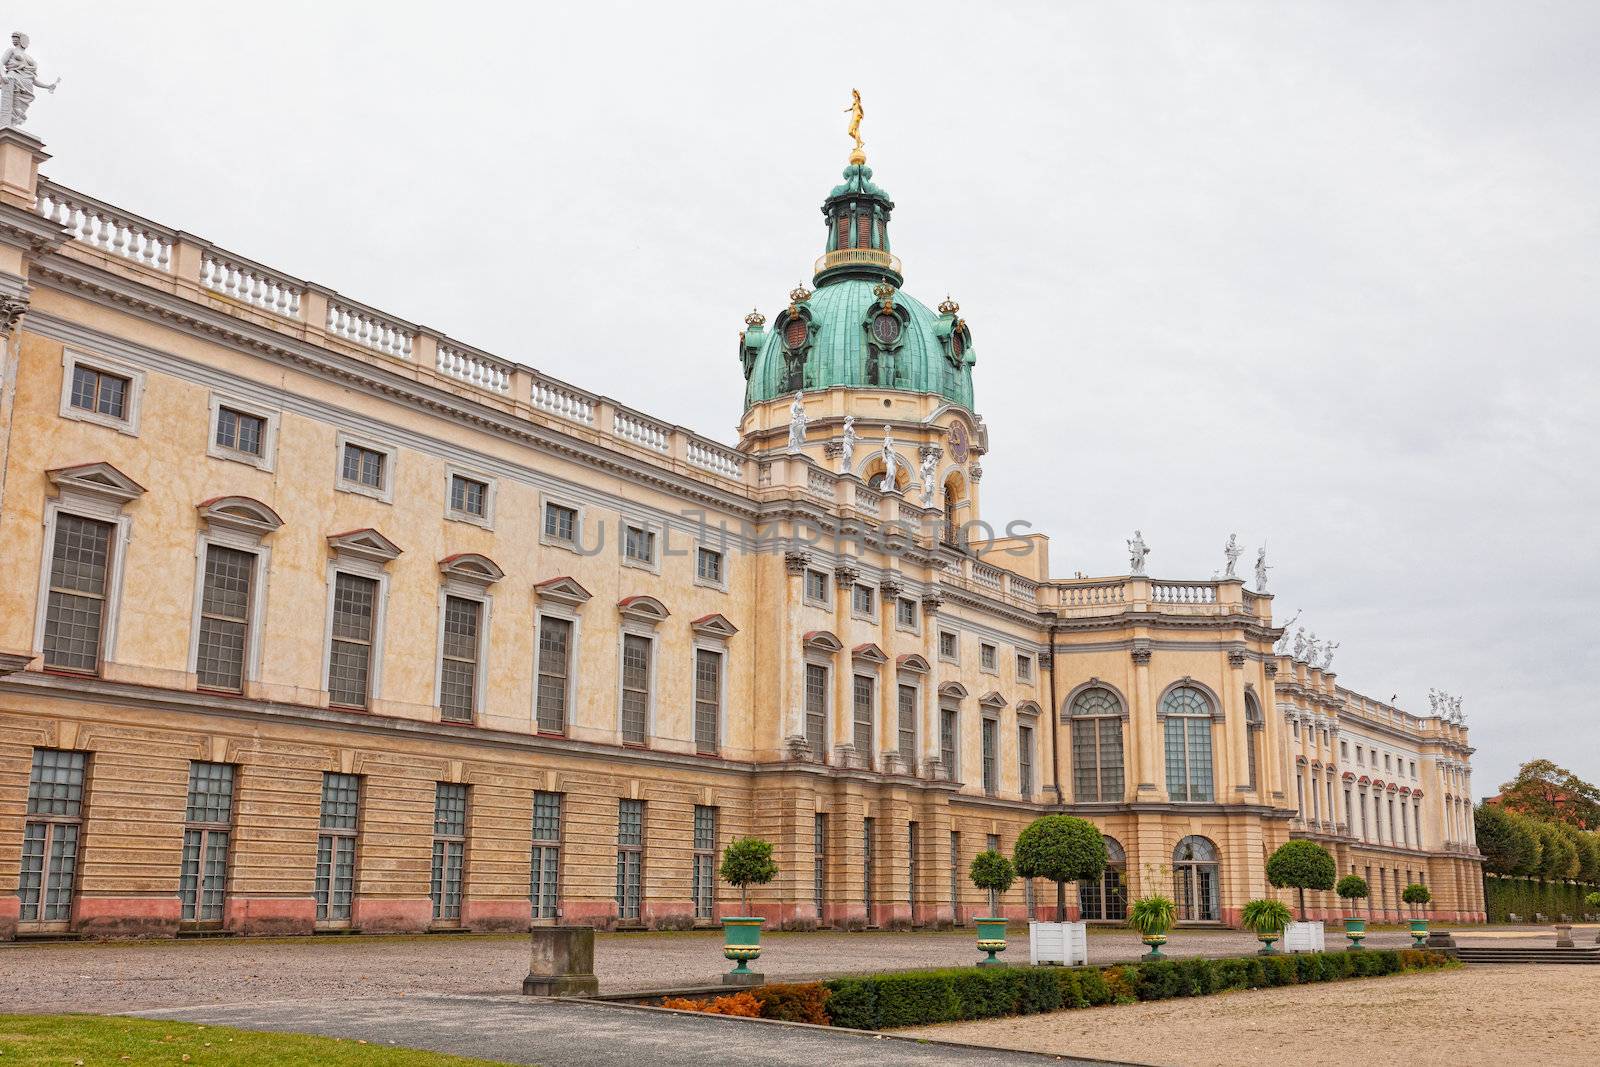 Schloss charlottenburg(char lottenburg palace) in Berlin by elena_shchipkova